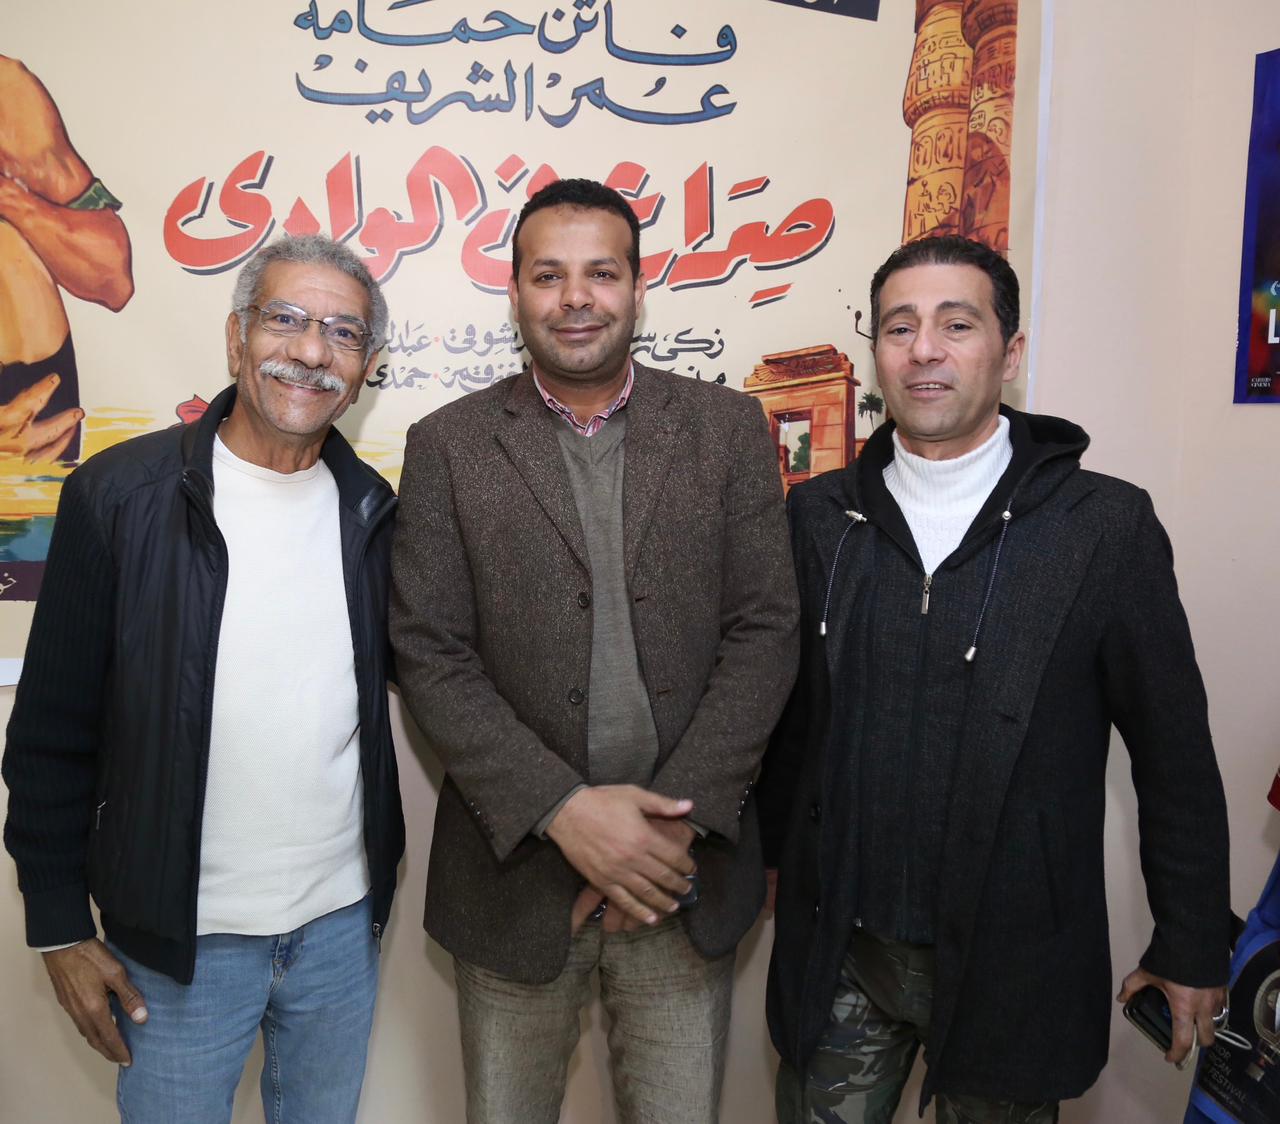 حميدة وسيسيه وسيد رجب في افتتاح معرض أفيشات السينما السنغالية والمصرية بمهرجان الأقصر (7)